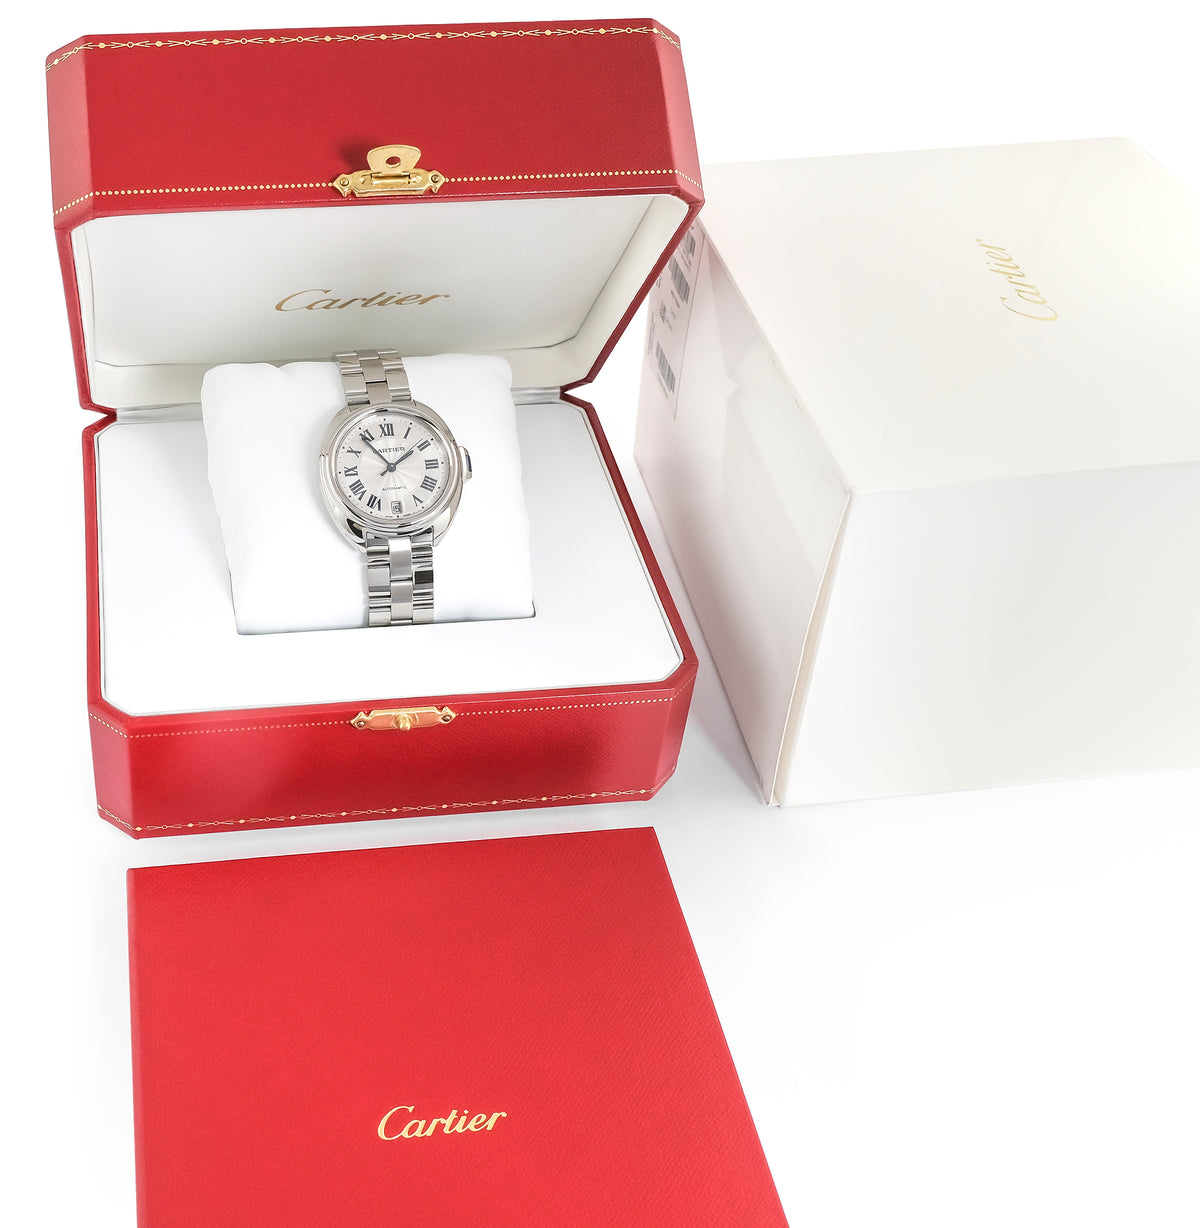 Cartier Cle De Cartier WSCL0006